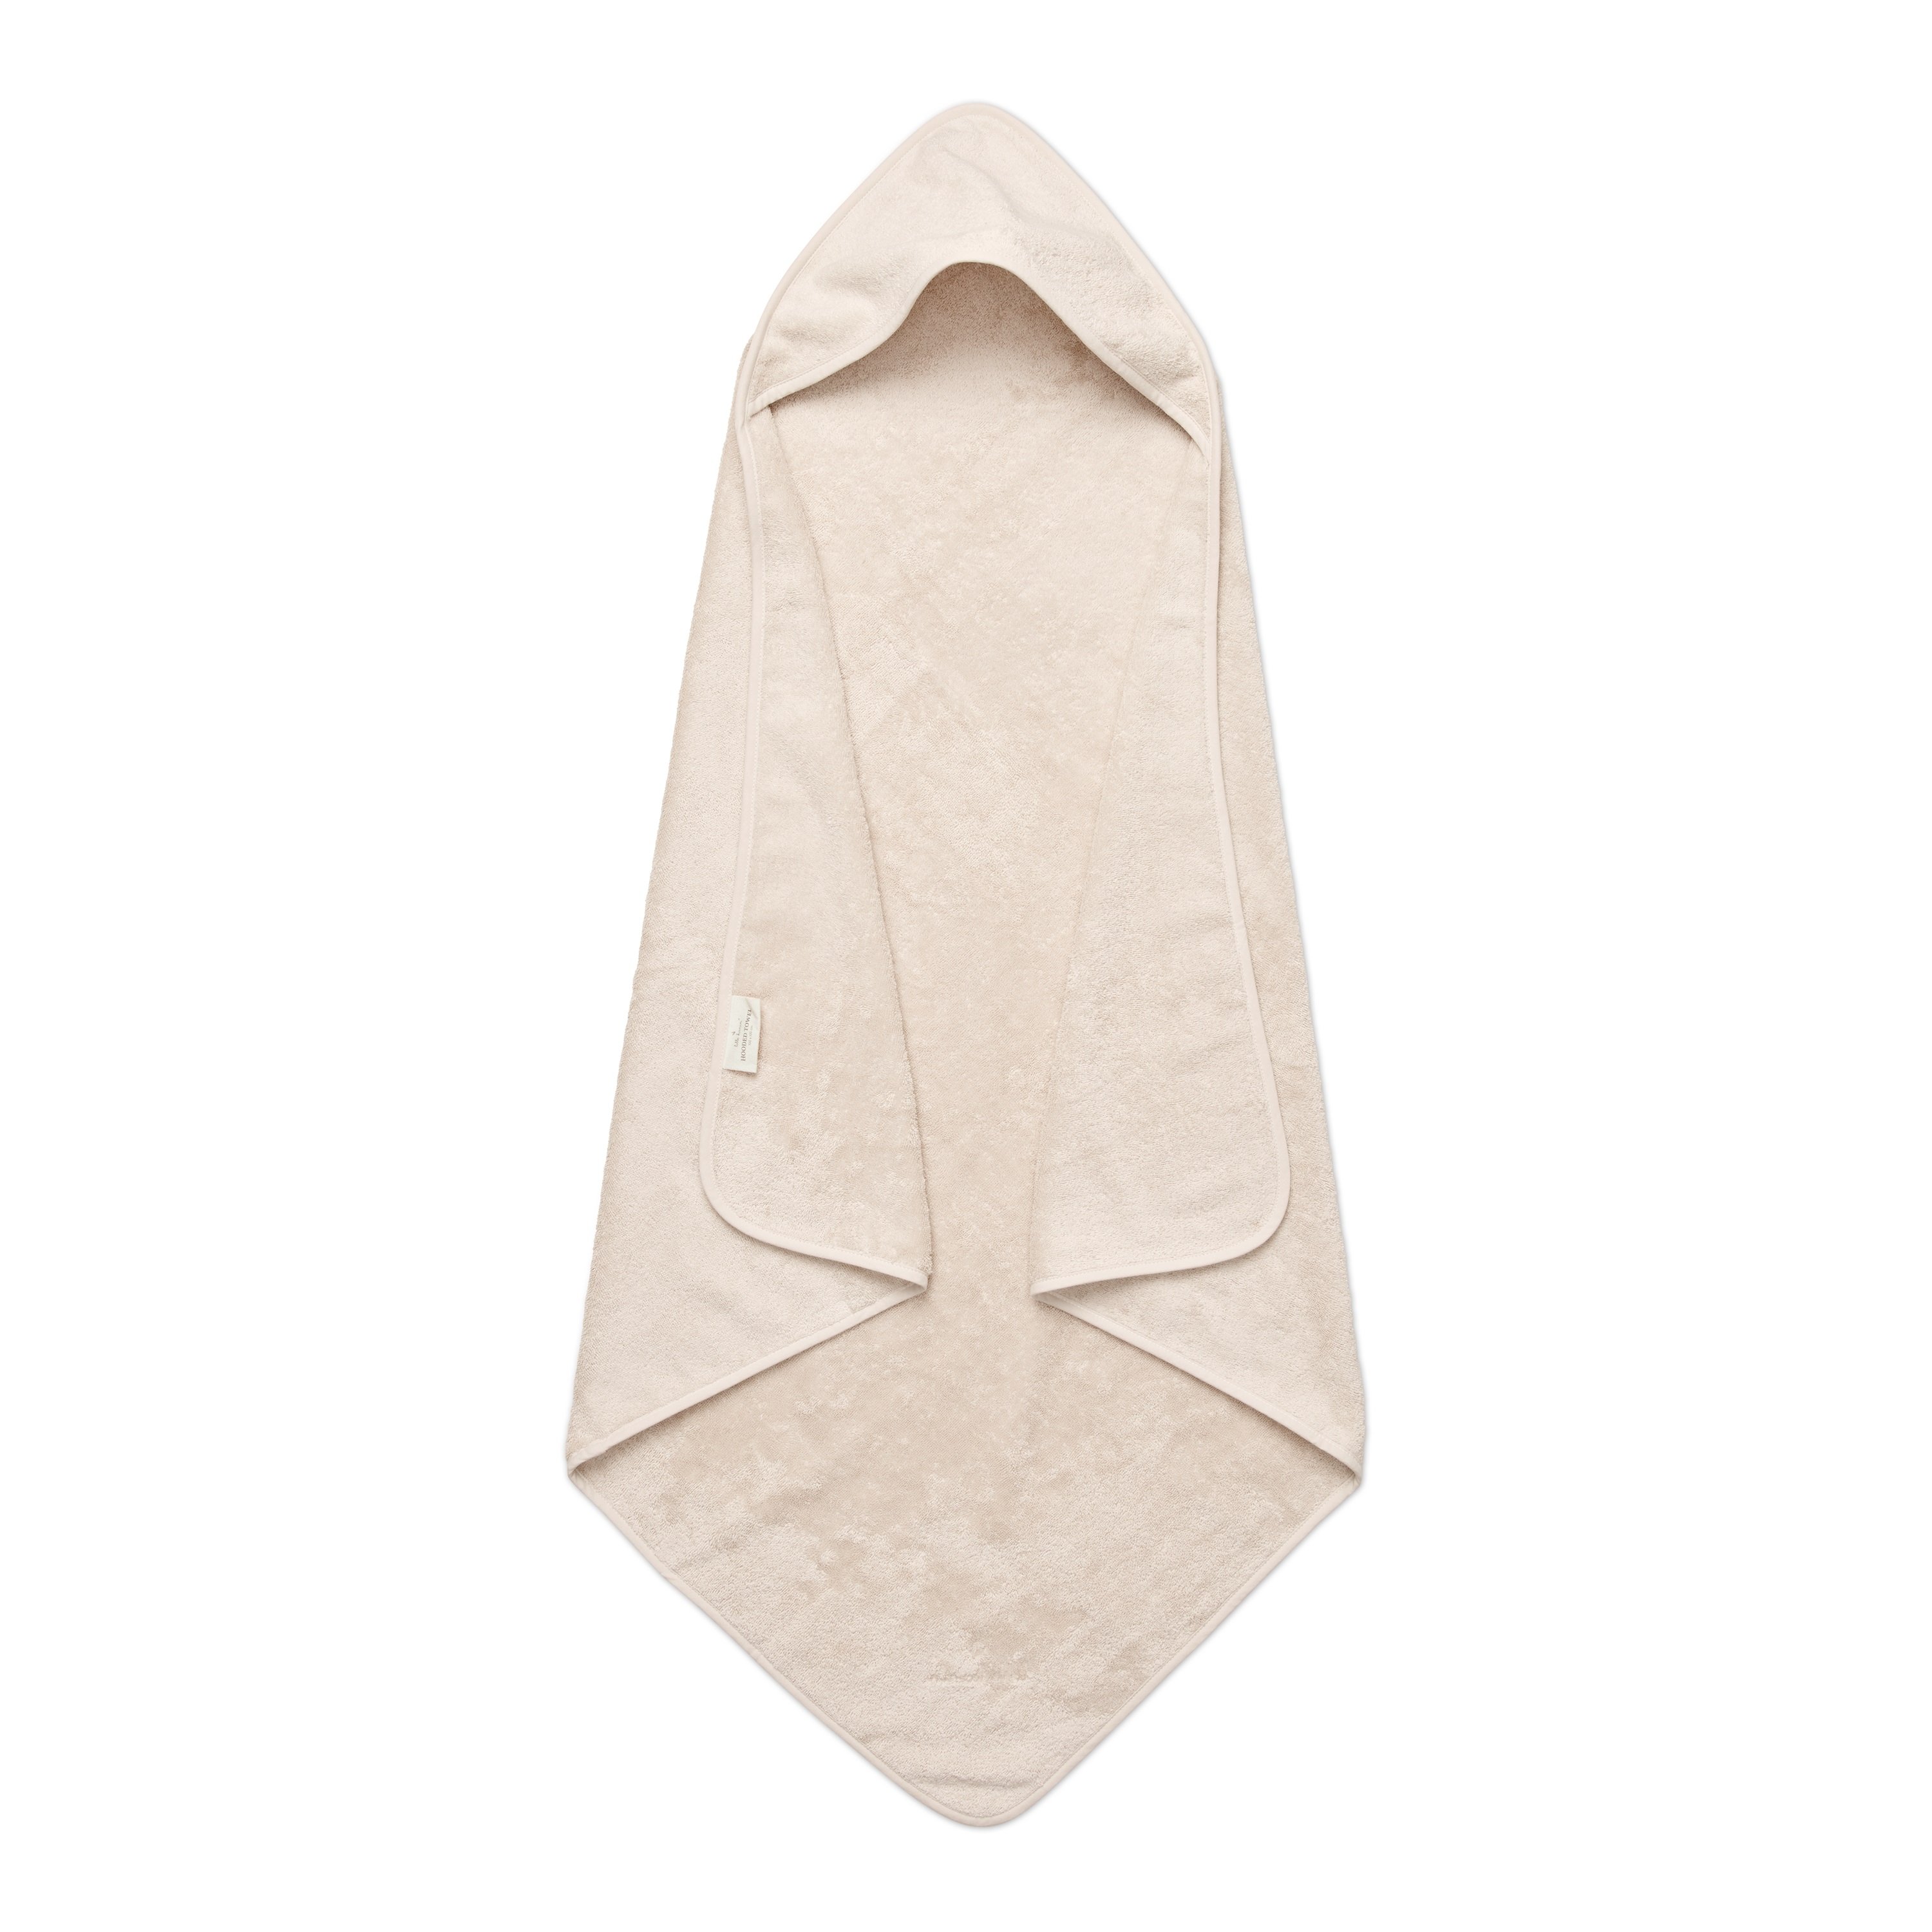 Lille Kanin - Hooded towel 100x100 Terry Vanilla Ice